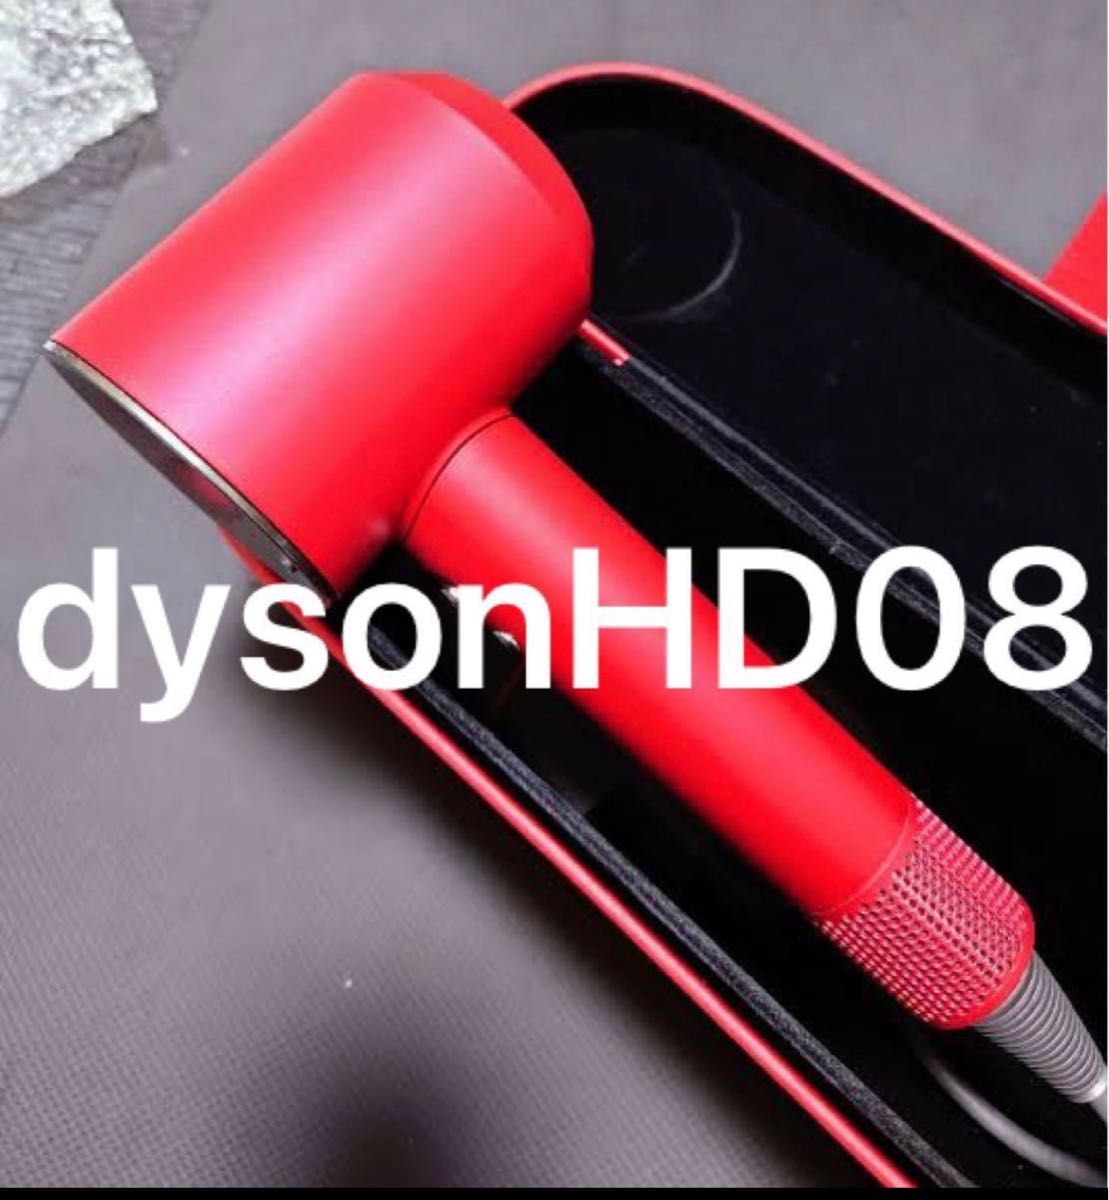 【未使用】dyson ヘアドライヤー HD08 レッド【付属品あり】 ヘアドライヤー 【待望★】